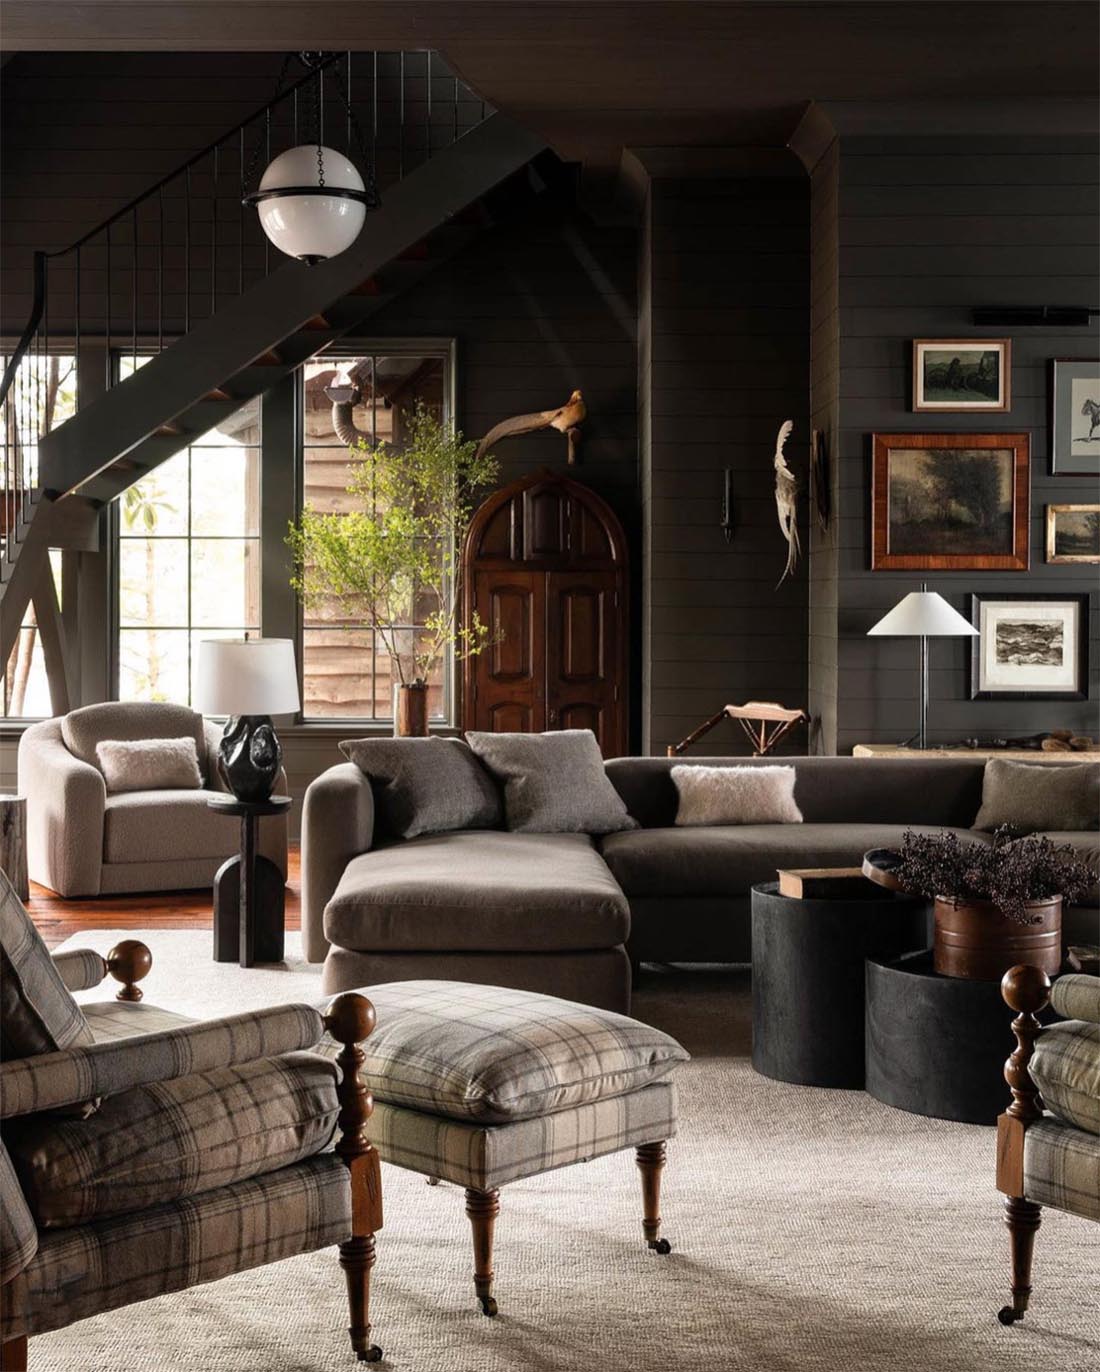 modern-rustic-living-room-in-dark-muted-tones-by-seanandersondesign-haris.kenjar-photo